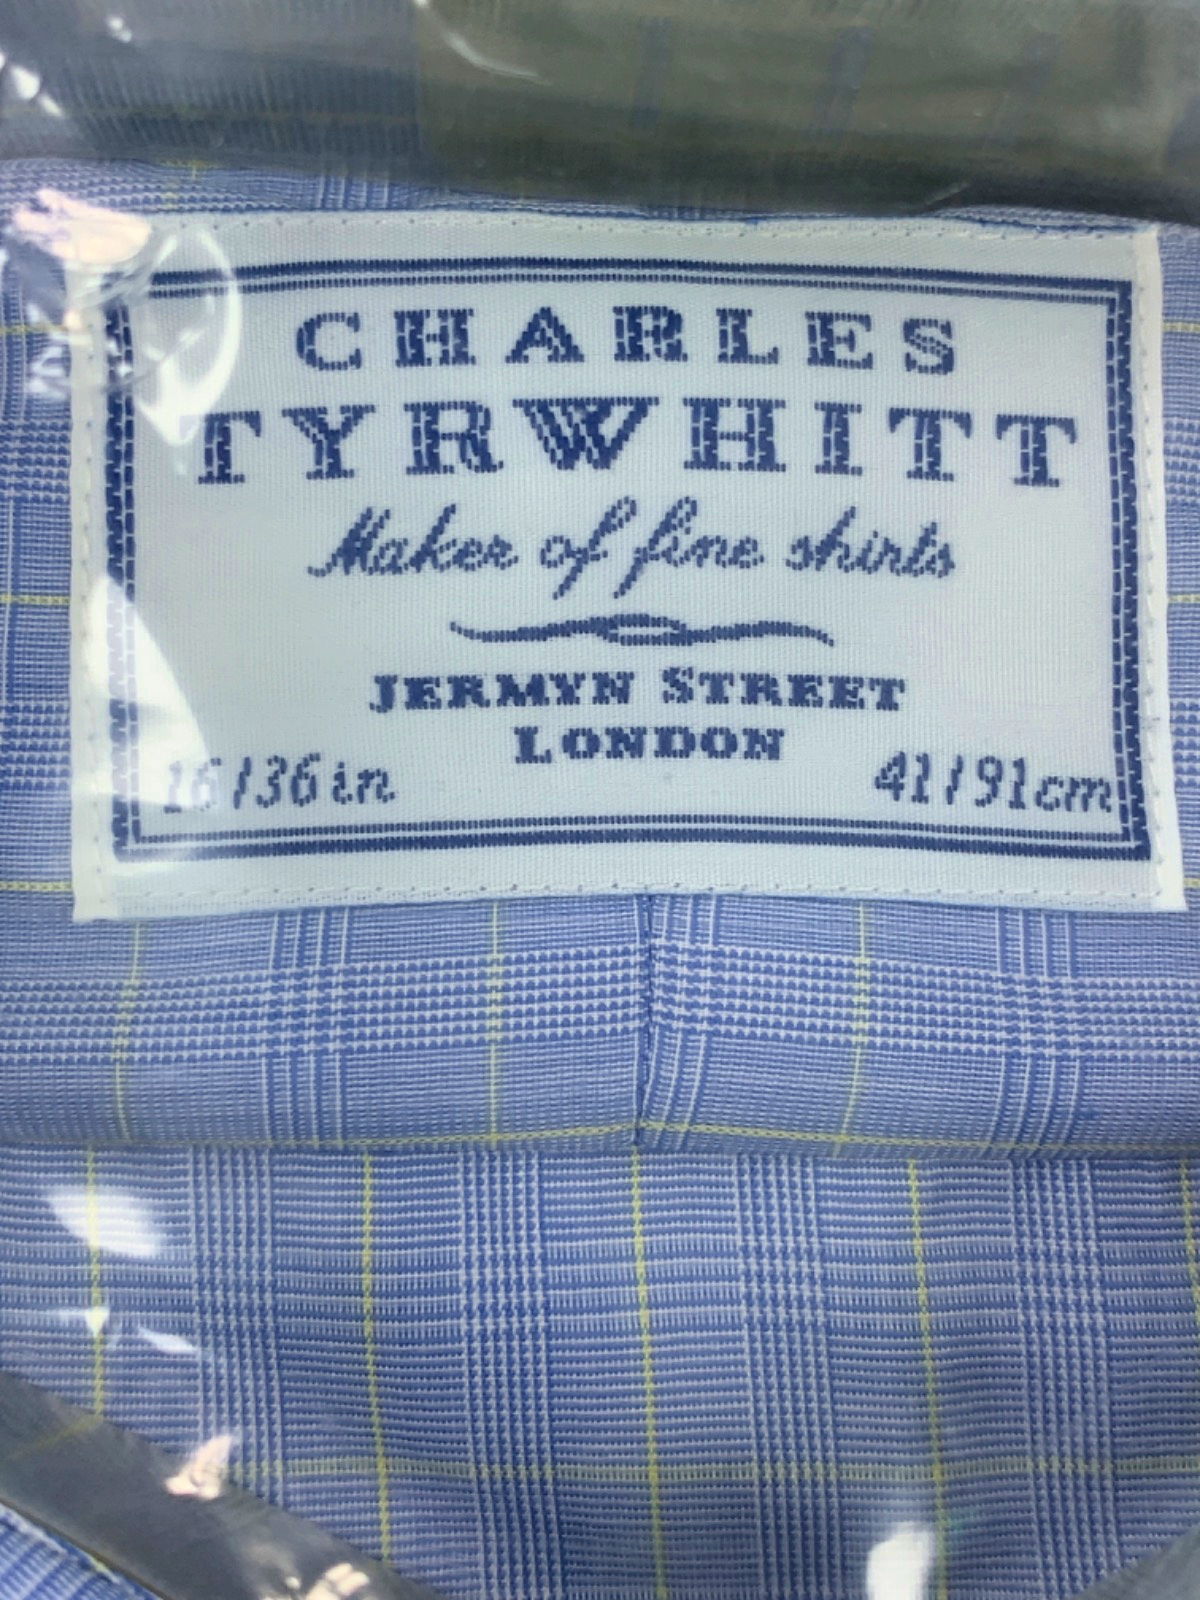 Charles Tyrwhitt Blue Check Classic Fit Shirt 16/36